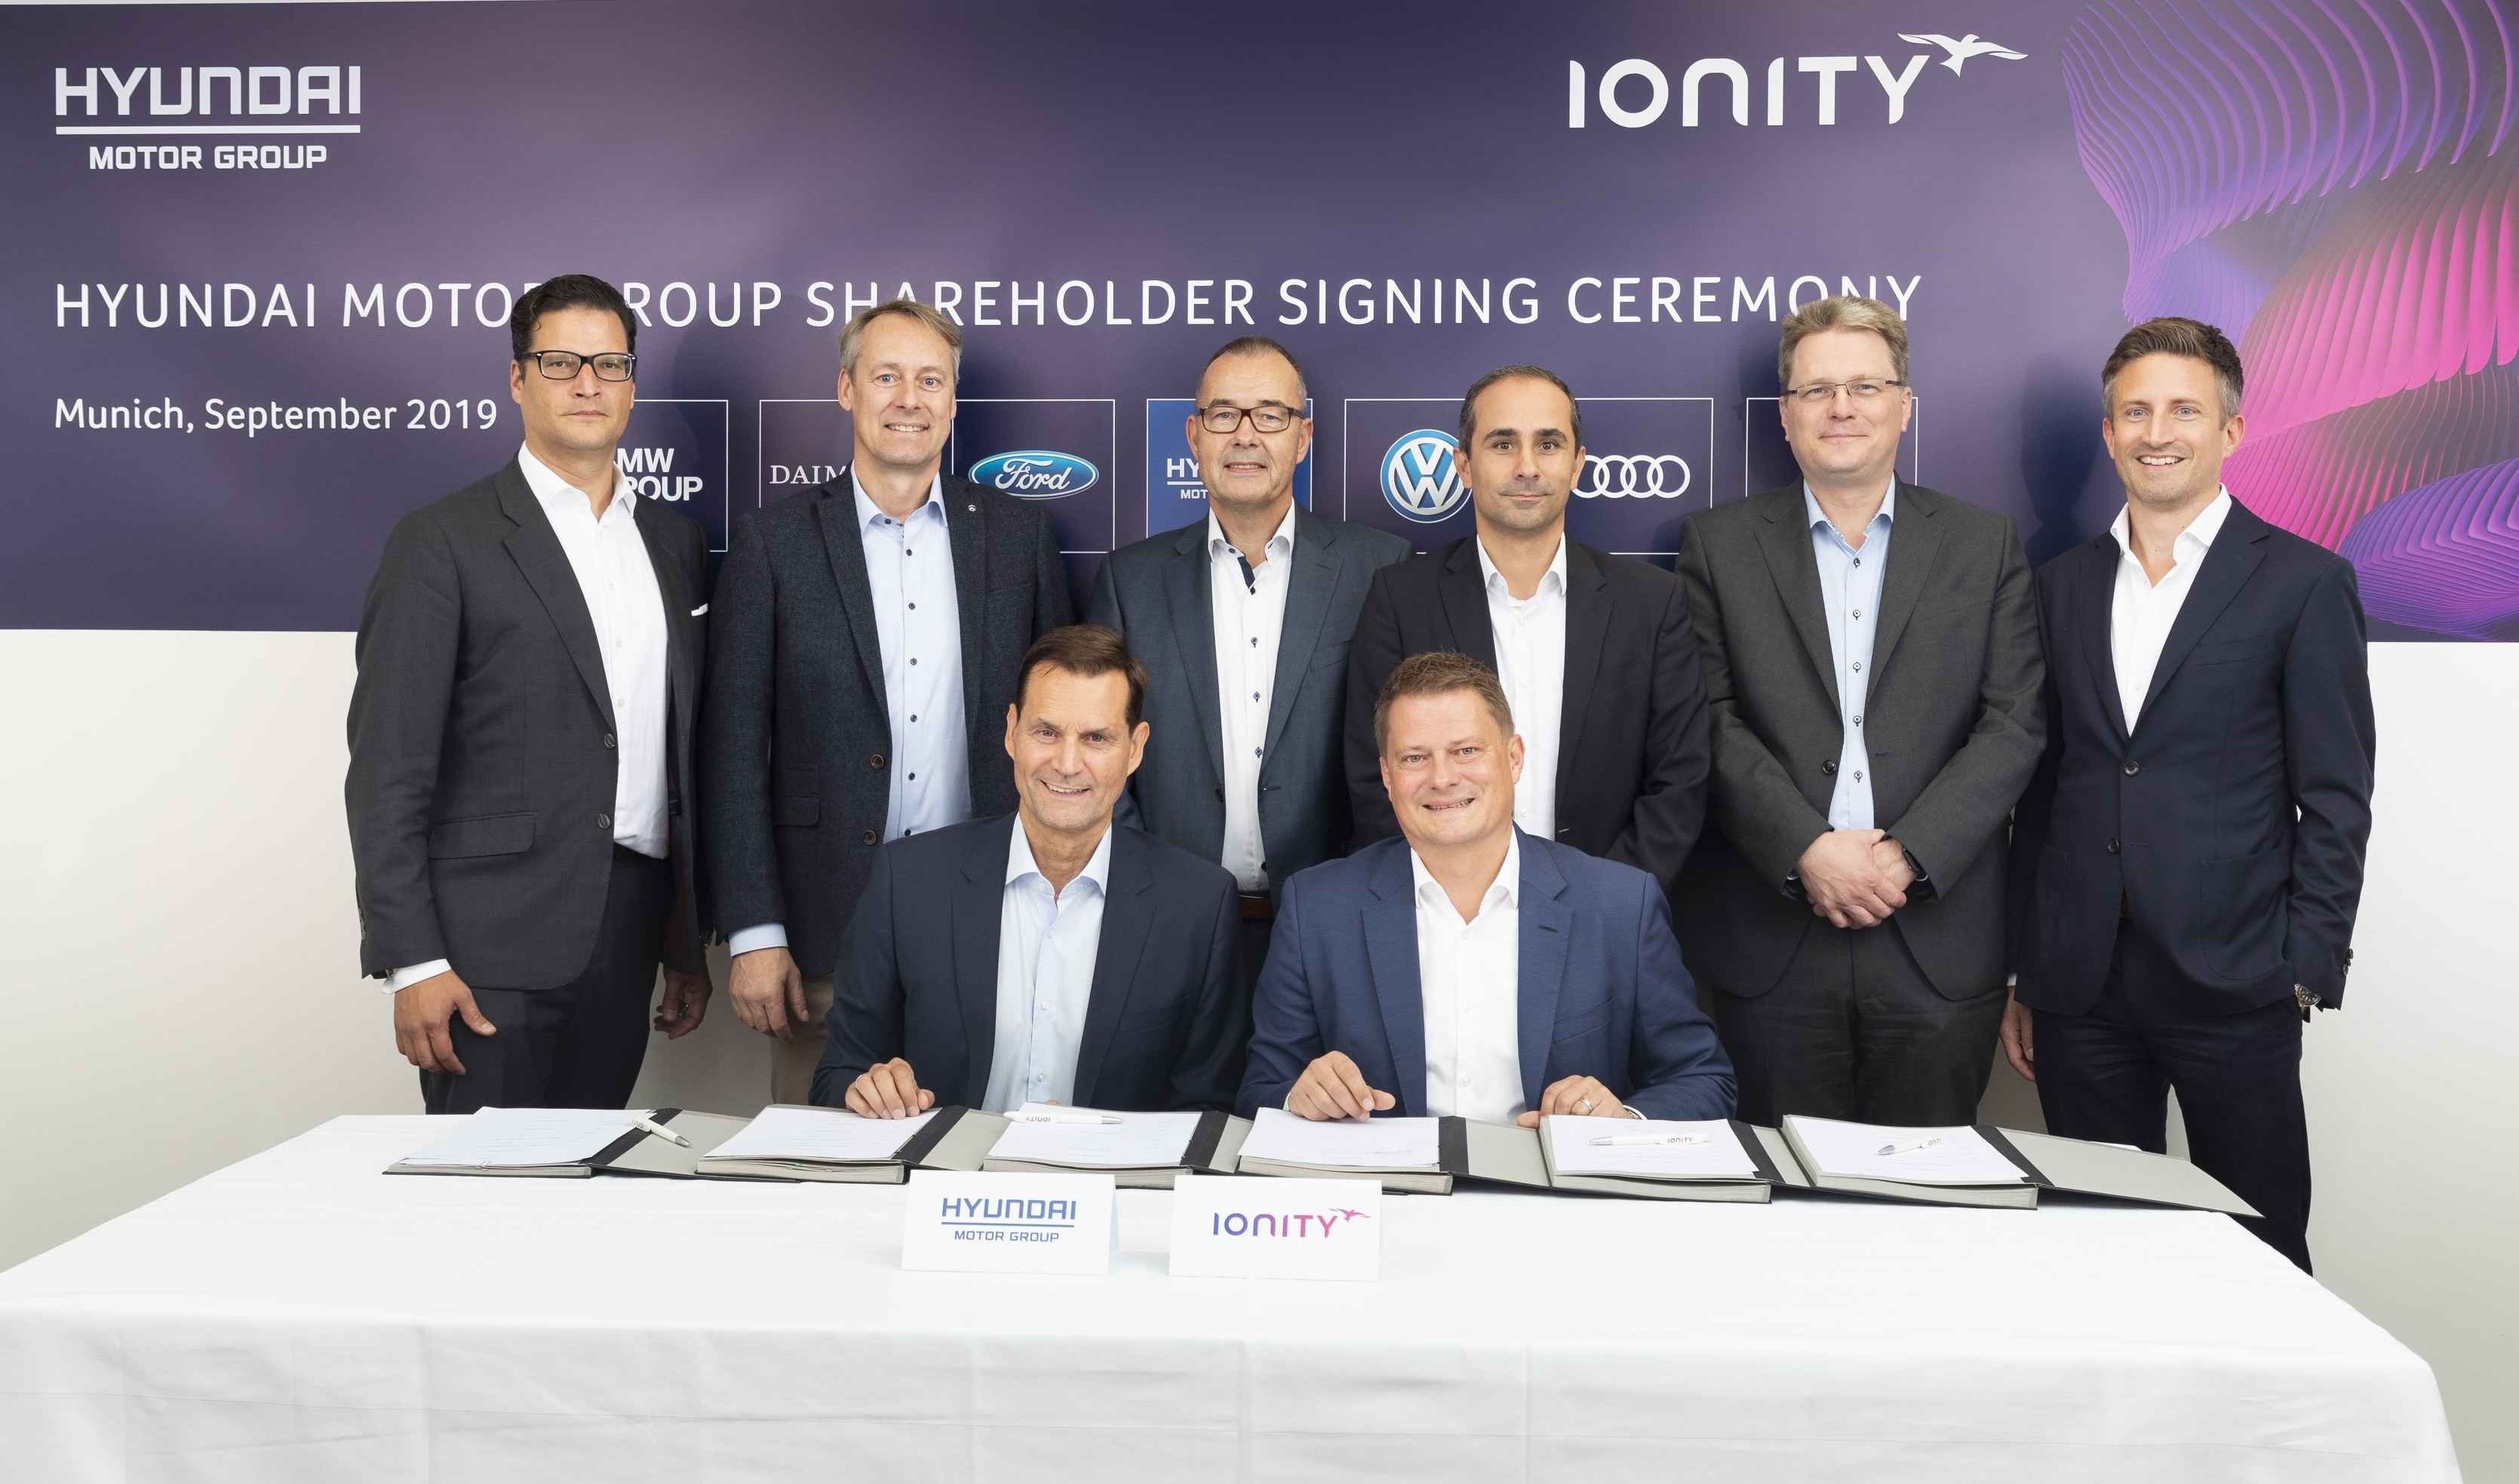 Hyundai Motor инвестирует в проект IONITY для расширения сети зарядных станций для электромобилей